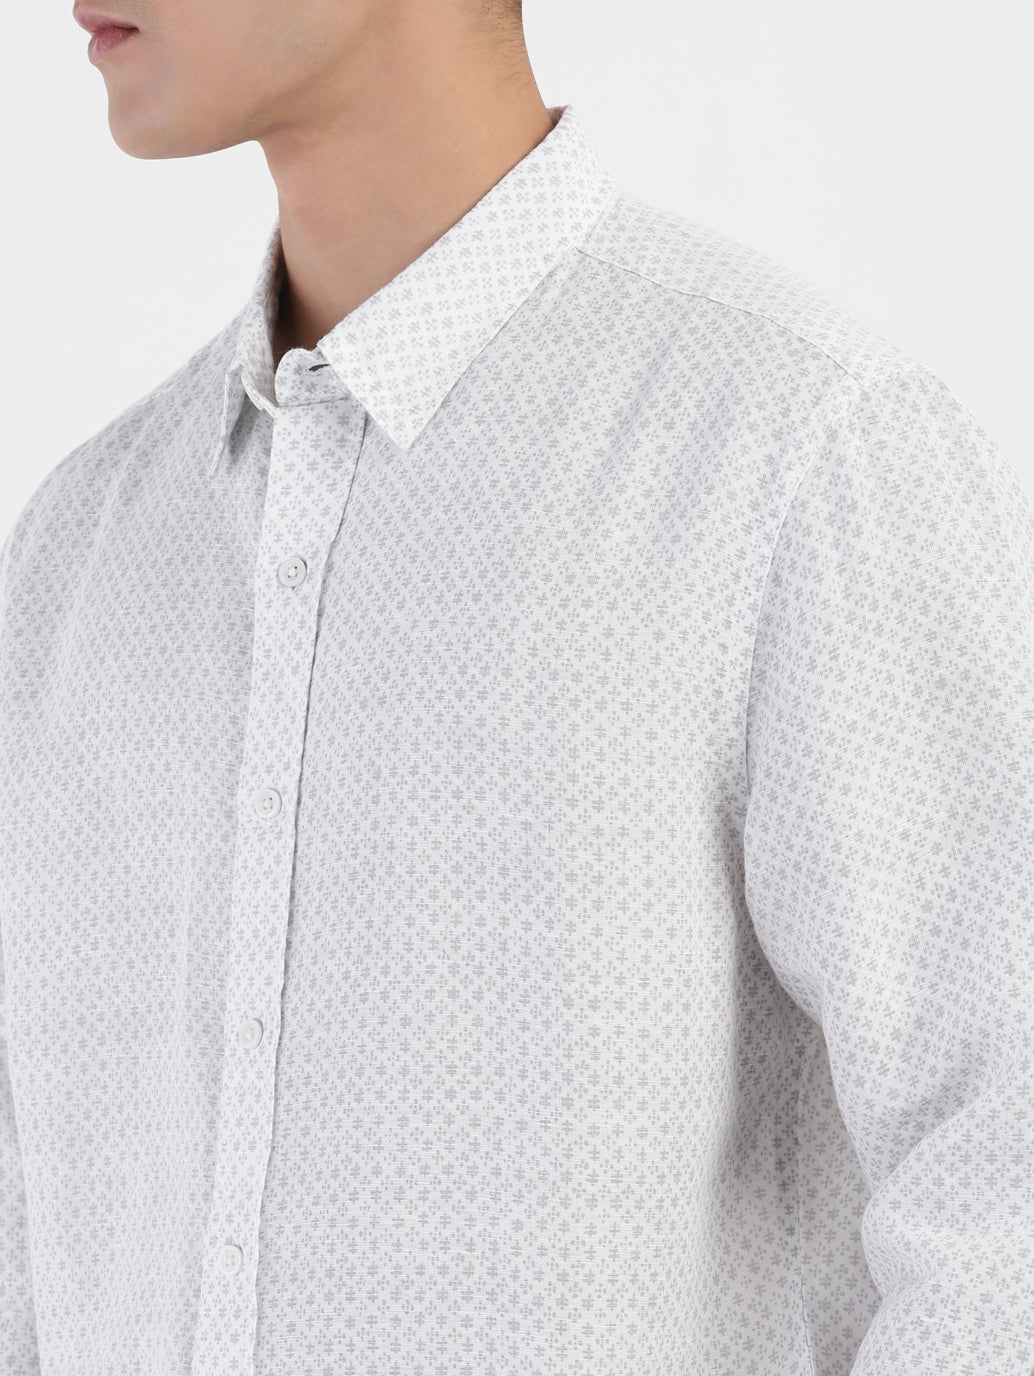 Men's Printed Spread Collar Linen Shirt